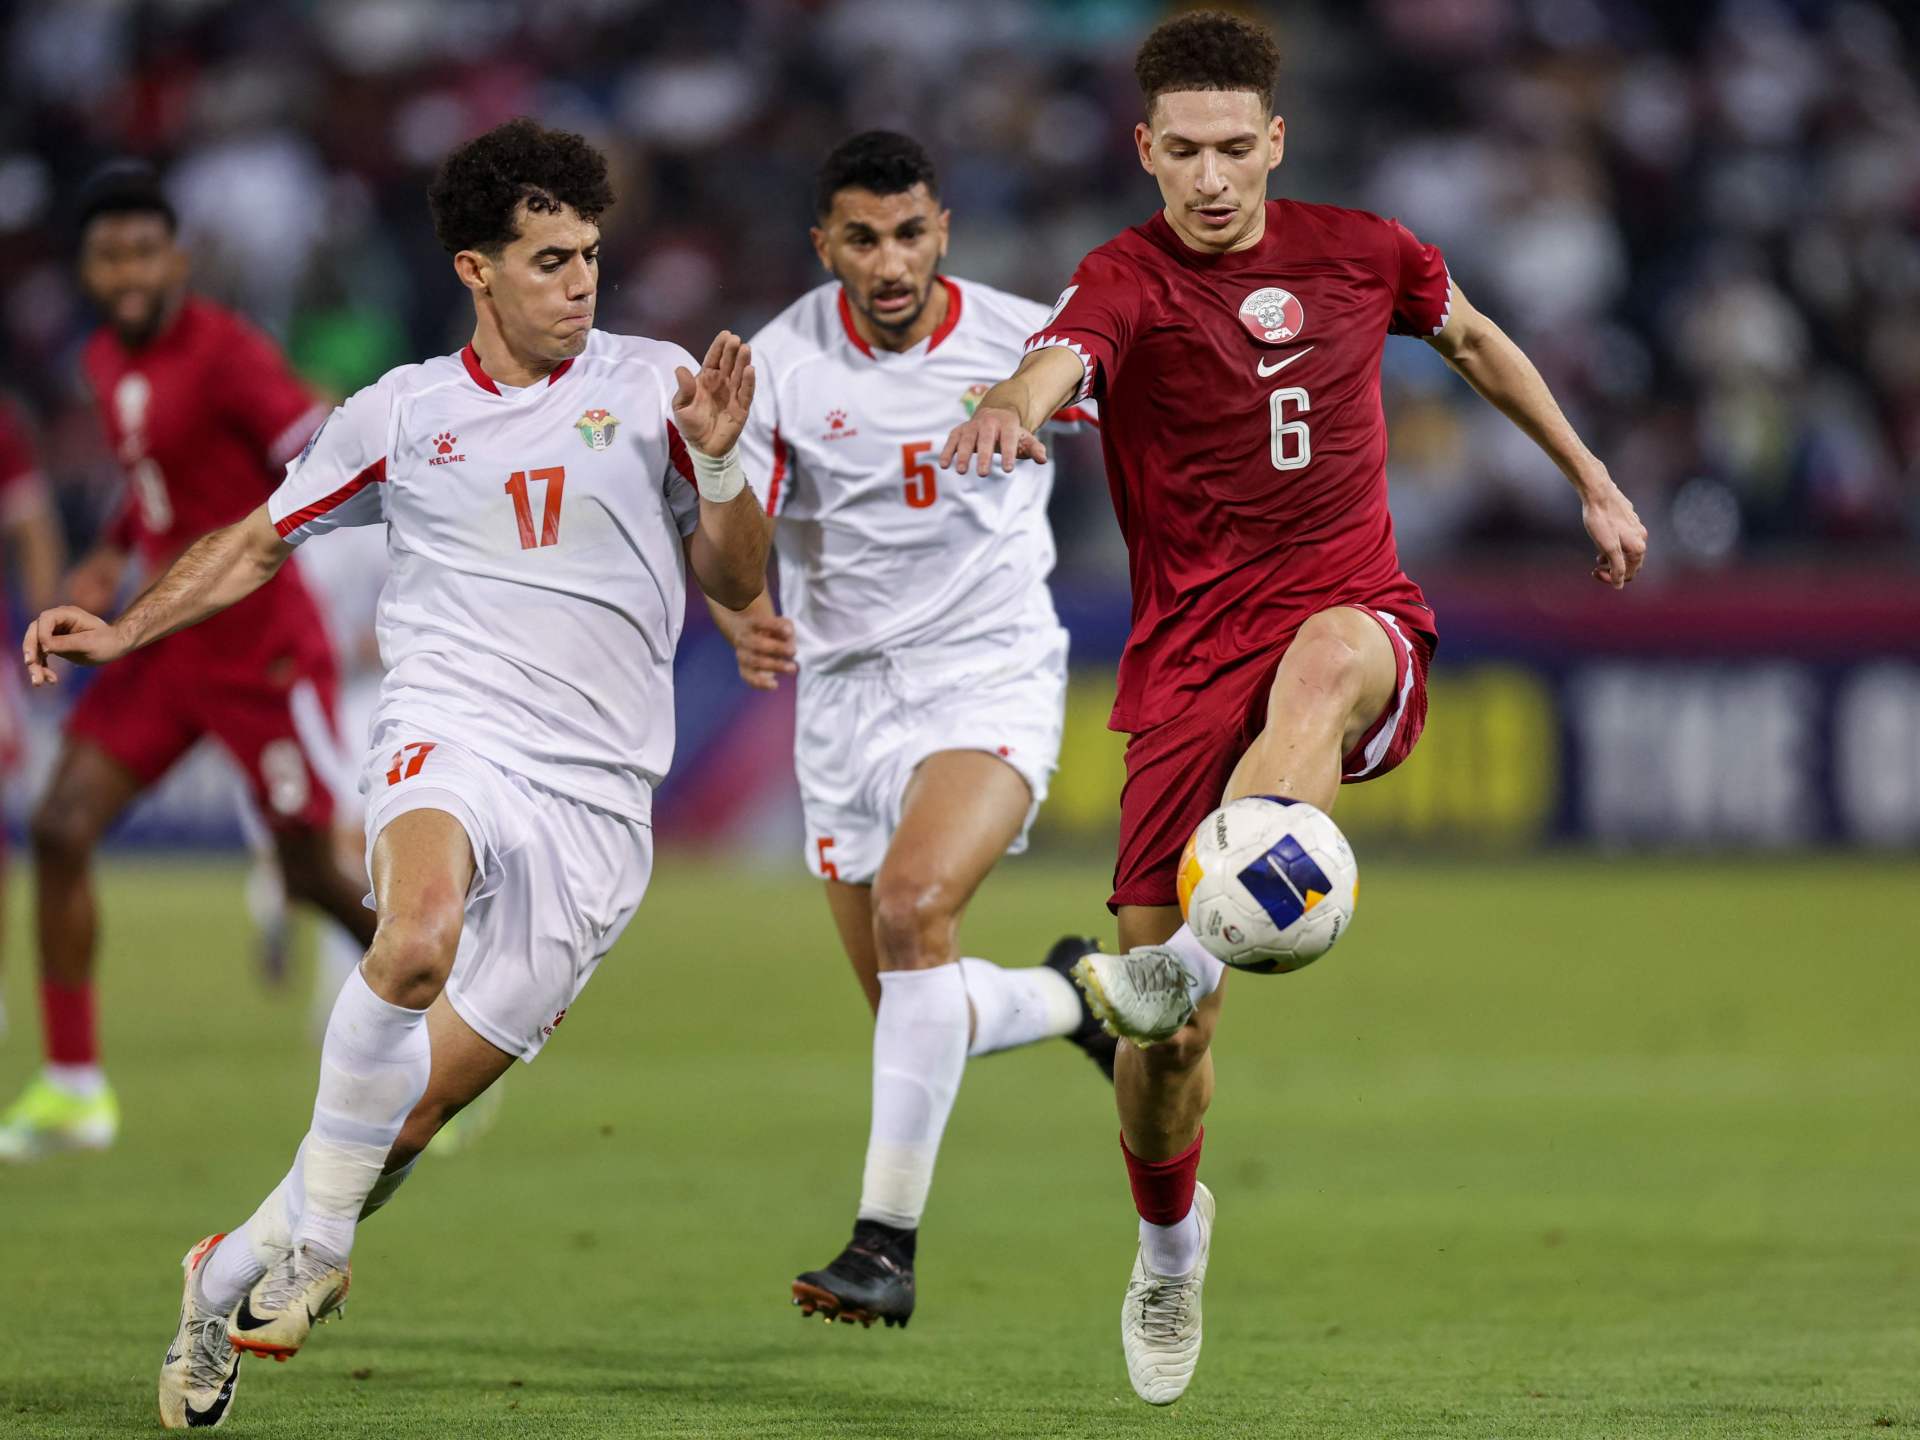 شاهد.. المنتخب القطري يتأهل إلى ربع نهائي كأس آسيا تحت 23 عاما | رياضة – البوكس نيوز